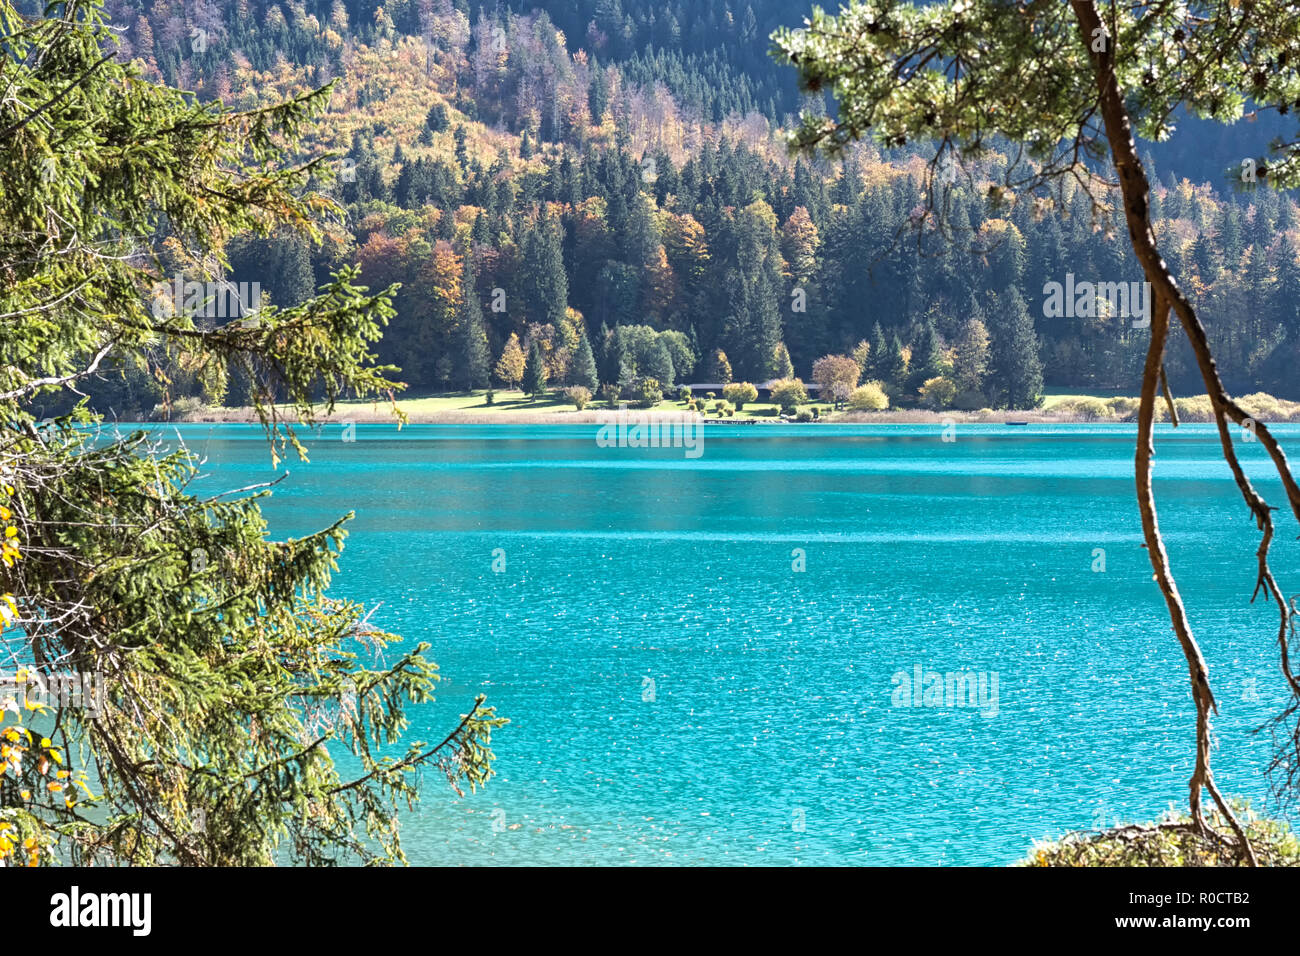 Vista del lago de color turquesa 'Alpsee' y el Alpseebad desde un camino alrededor del lago en otoño. Schwangau, Füssen, Baviera, Alemania Foto de stock